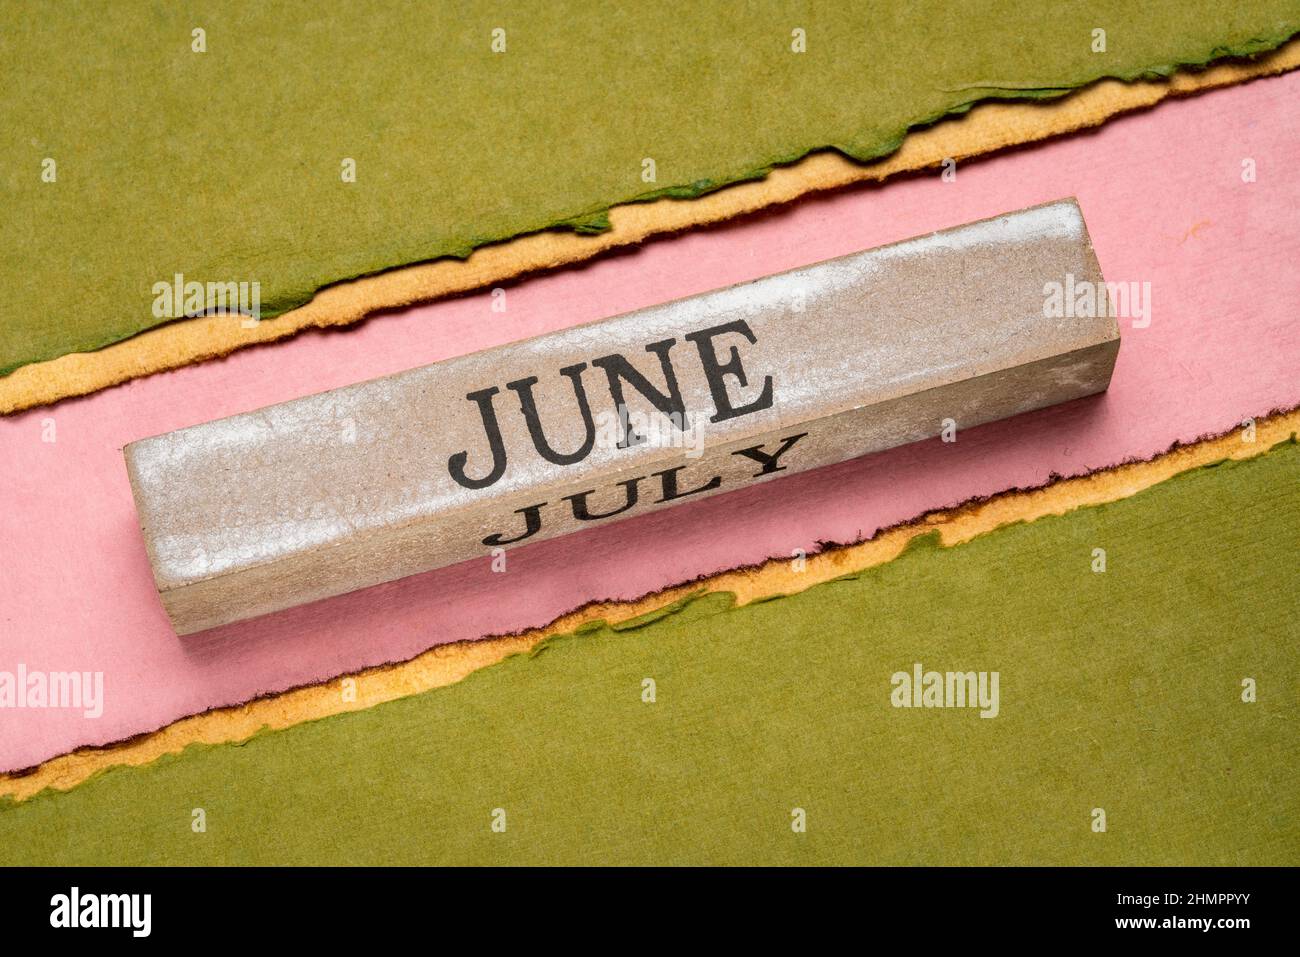 Juni Text auf grunge Holzblock gegen handgemachtes Lapppapier in rosa, orange und grünen Tönen, Kalenderkonzept Stockfoto